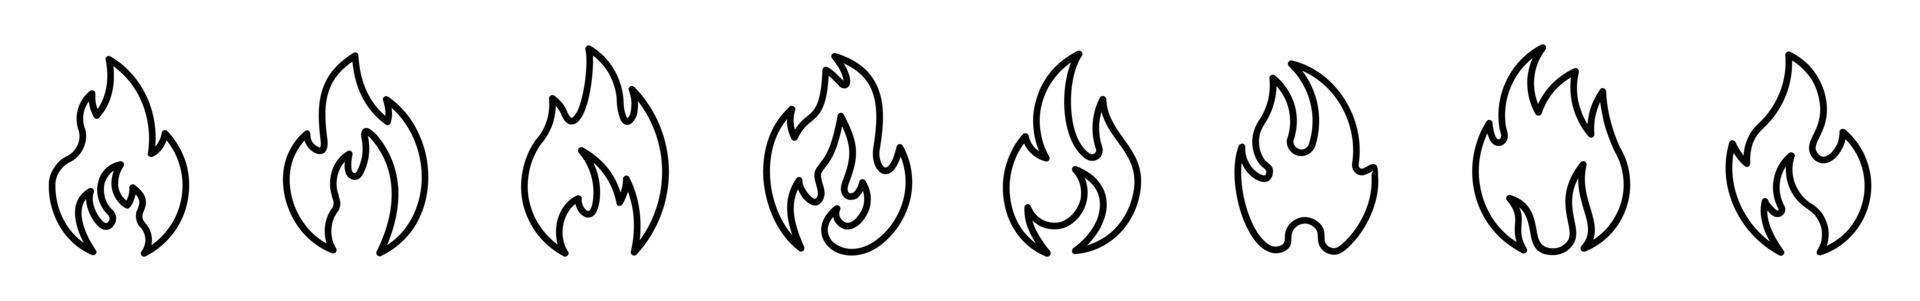 ensemble d'icônes de flamme de feu dans un style différent. illustration de logo vectoriel de silhouette de ligne de feu de joie sur fond blanc.